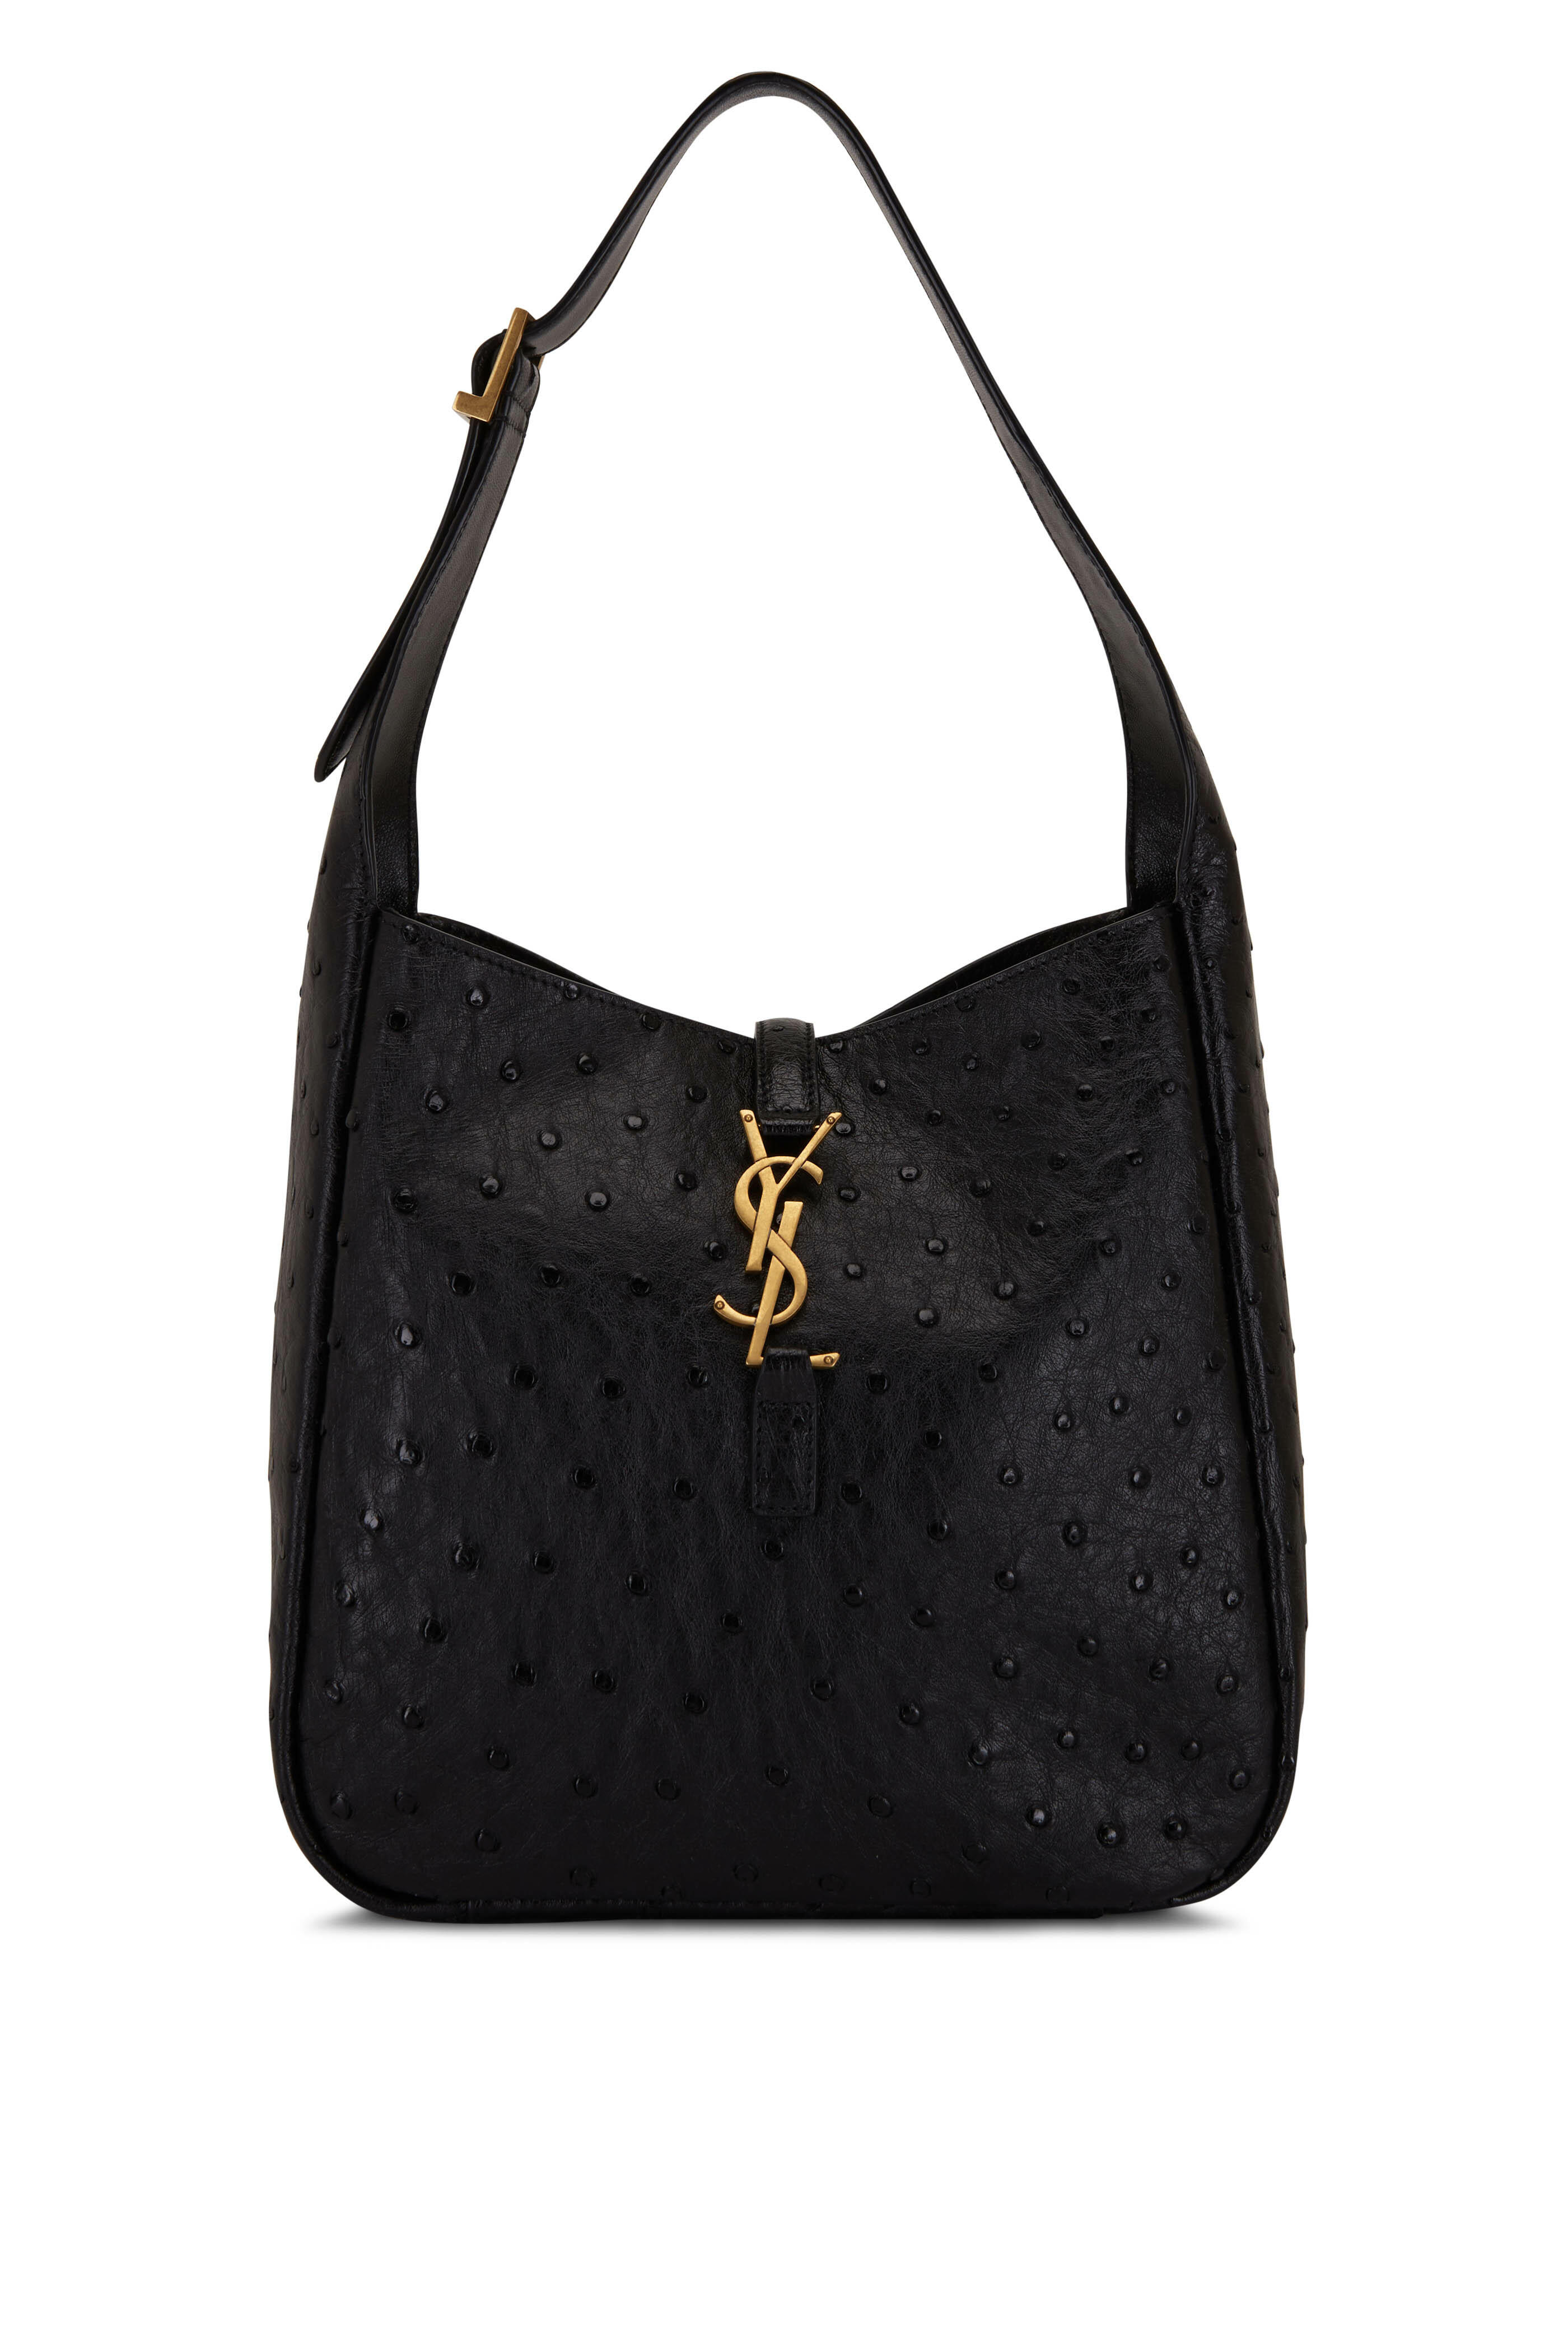 Saint Laurent Black Clutch Bags & Handbags for Women for sale